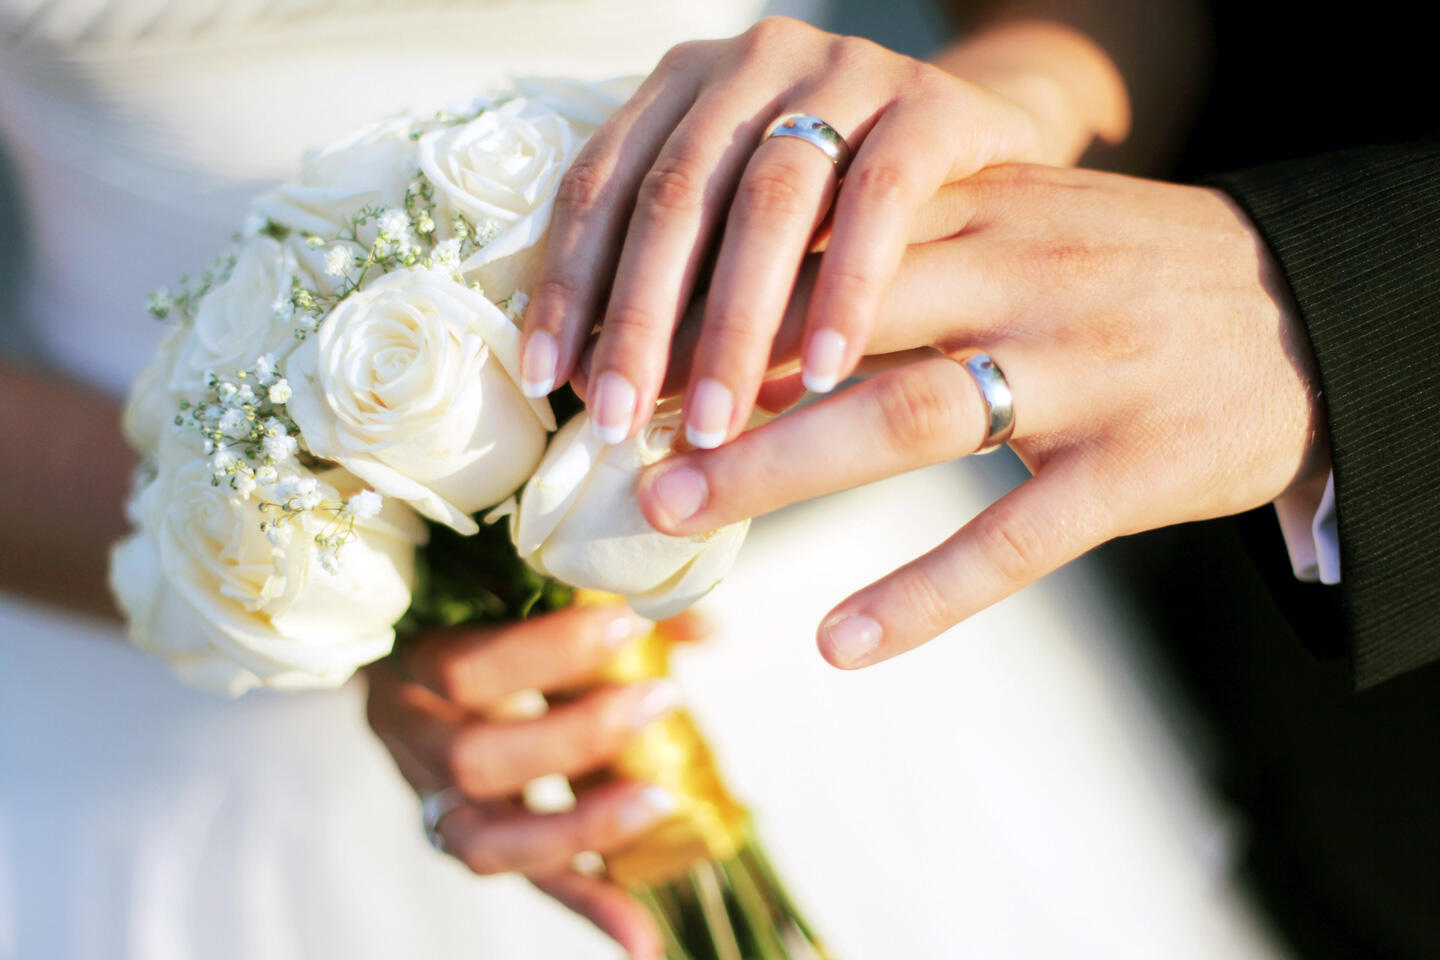 Hände eines verheirateten Paares mit ihren Eheringen, die Braut hält einen Strauß weißer Rosen, auf der Pariser Hochzeitsmesse